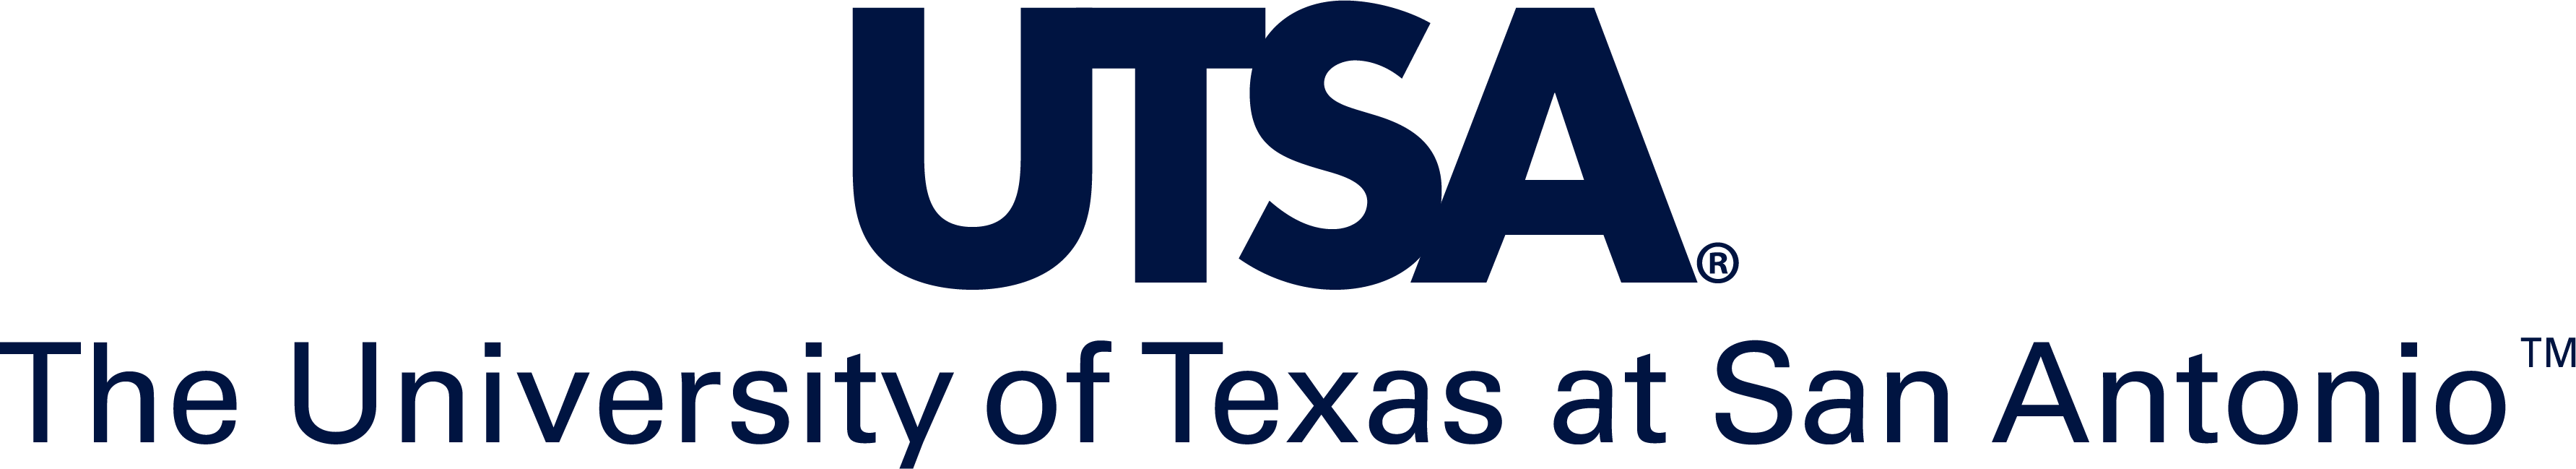 utsa-logo-centered_blue